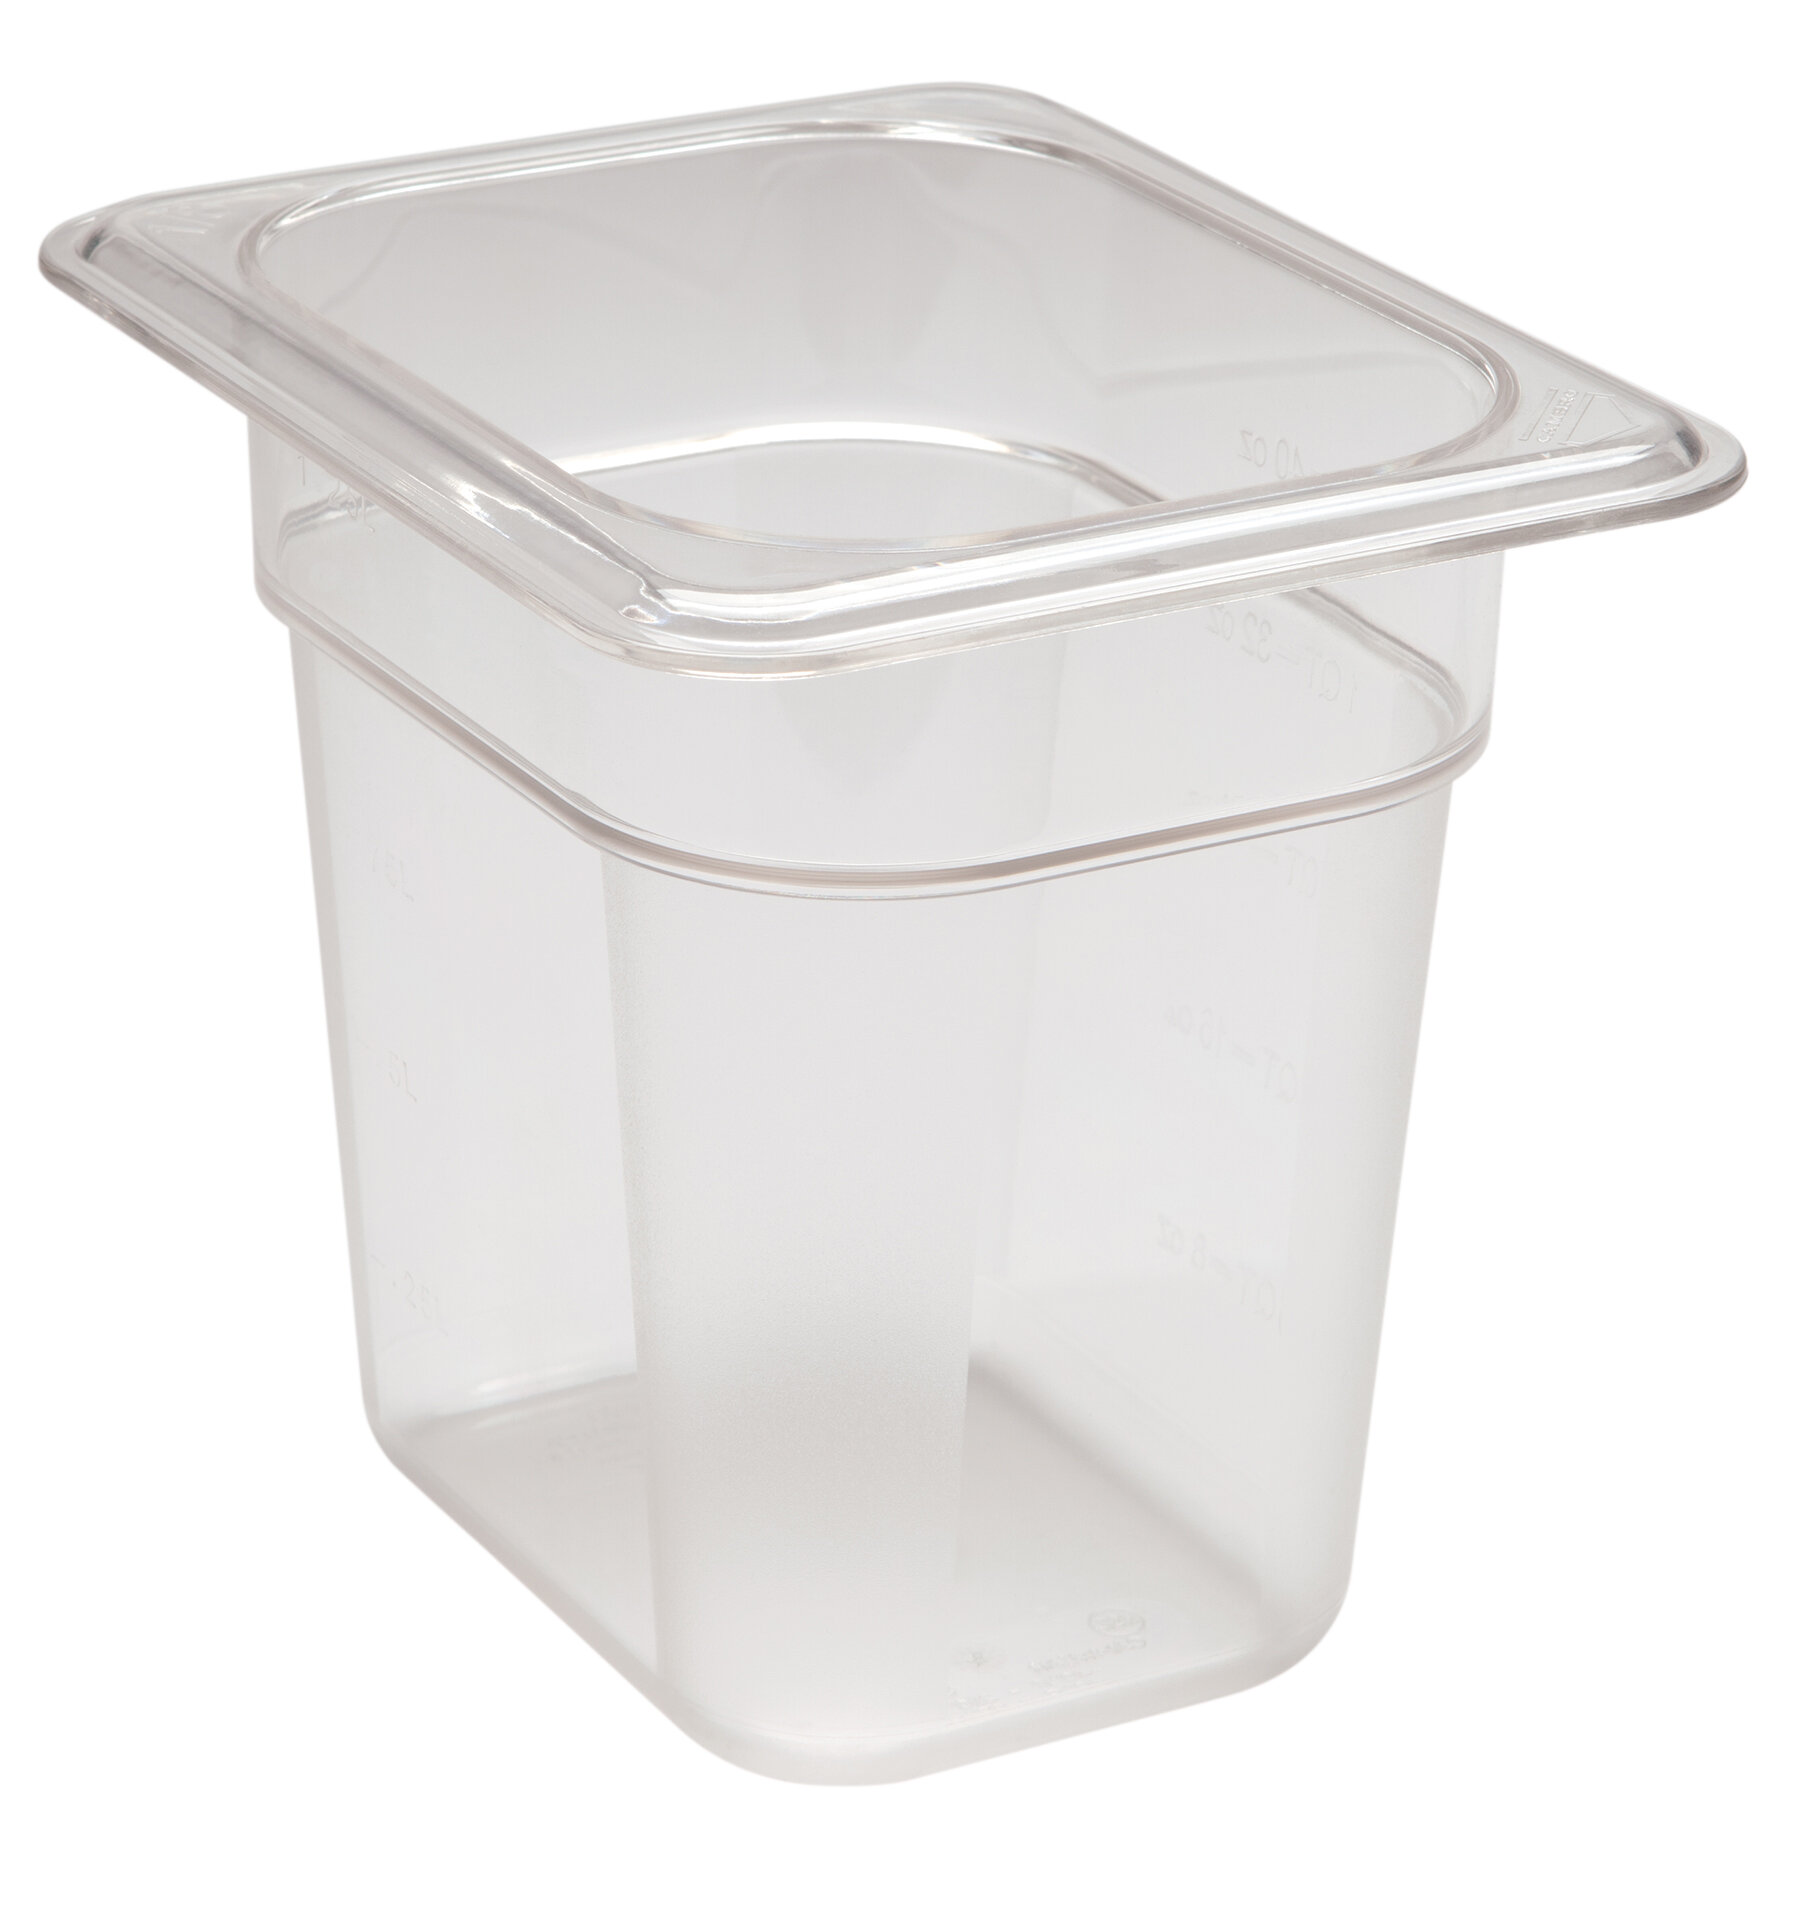 Cambro Clear Plastic Container (17 Gallon)